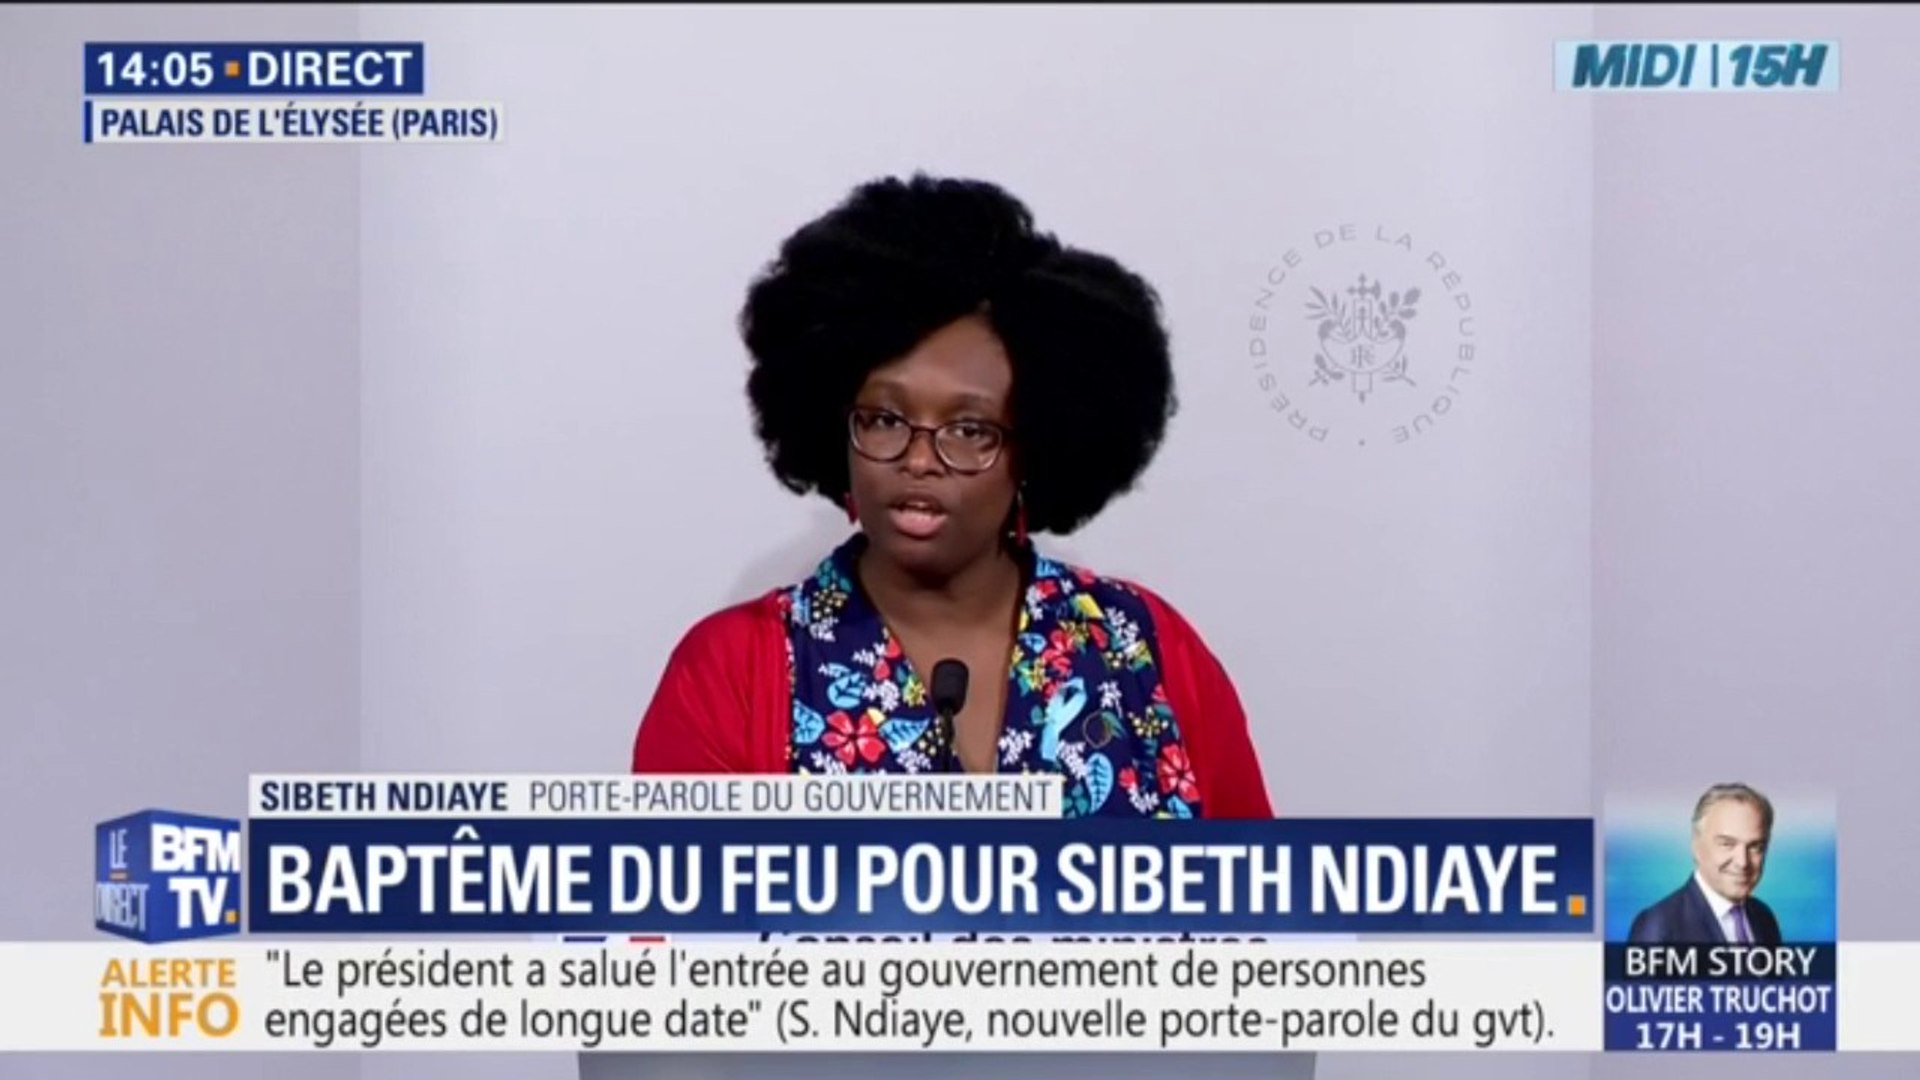 Sibeth Ndiaye, porte-parole du gouvernement, sur son rôle politique:  "J'aborde les choses avec beaucoup d'humilité" - Vidéo Dailymotion